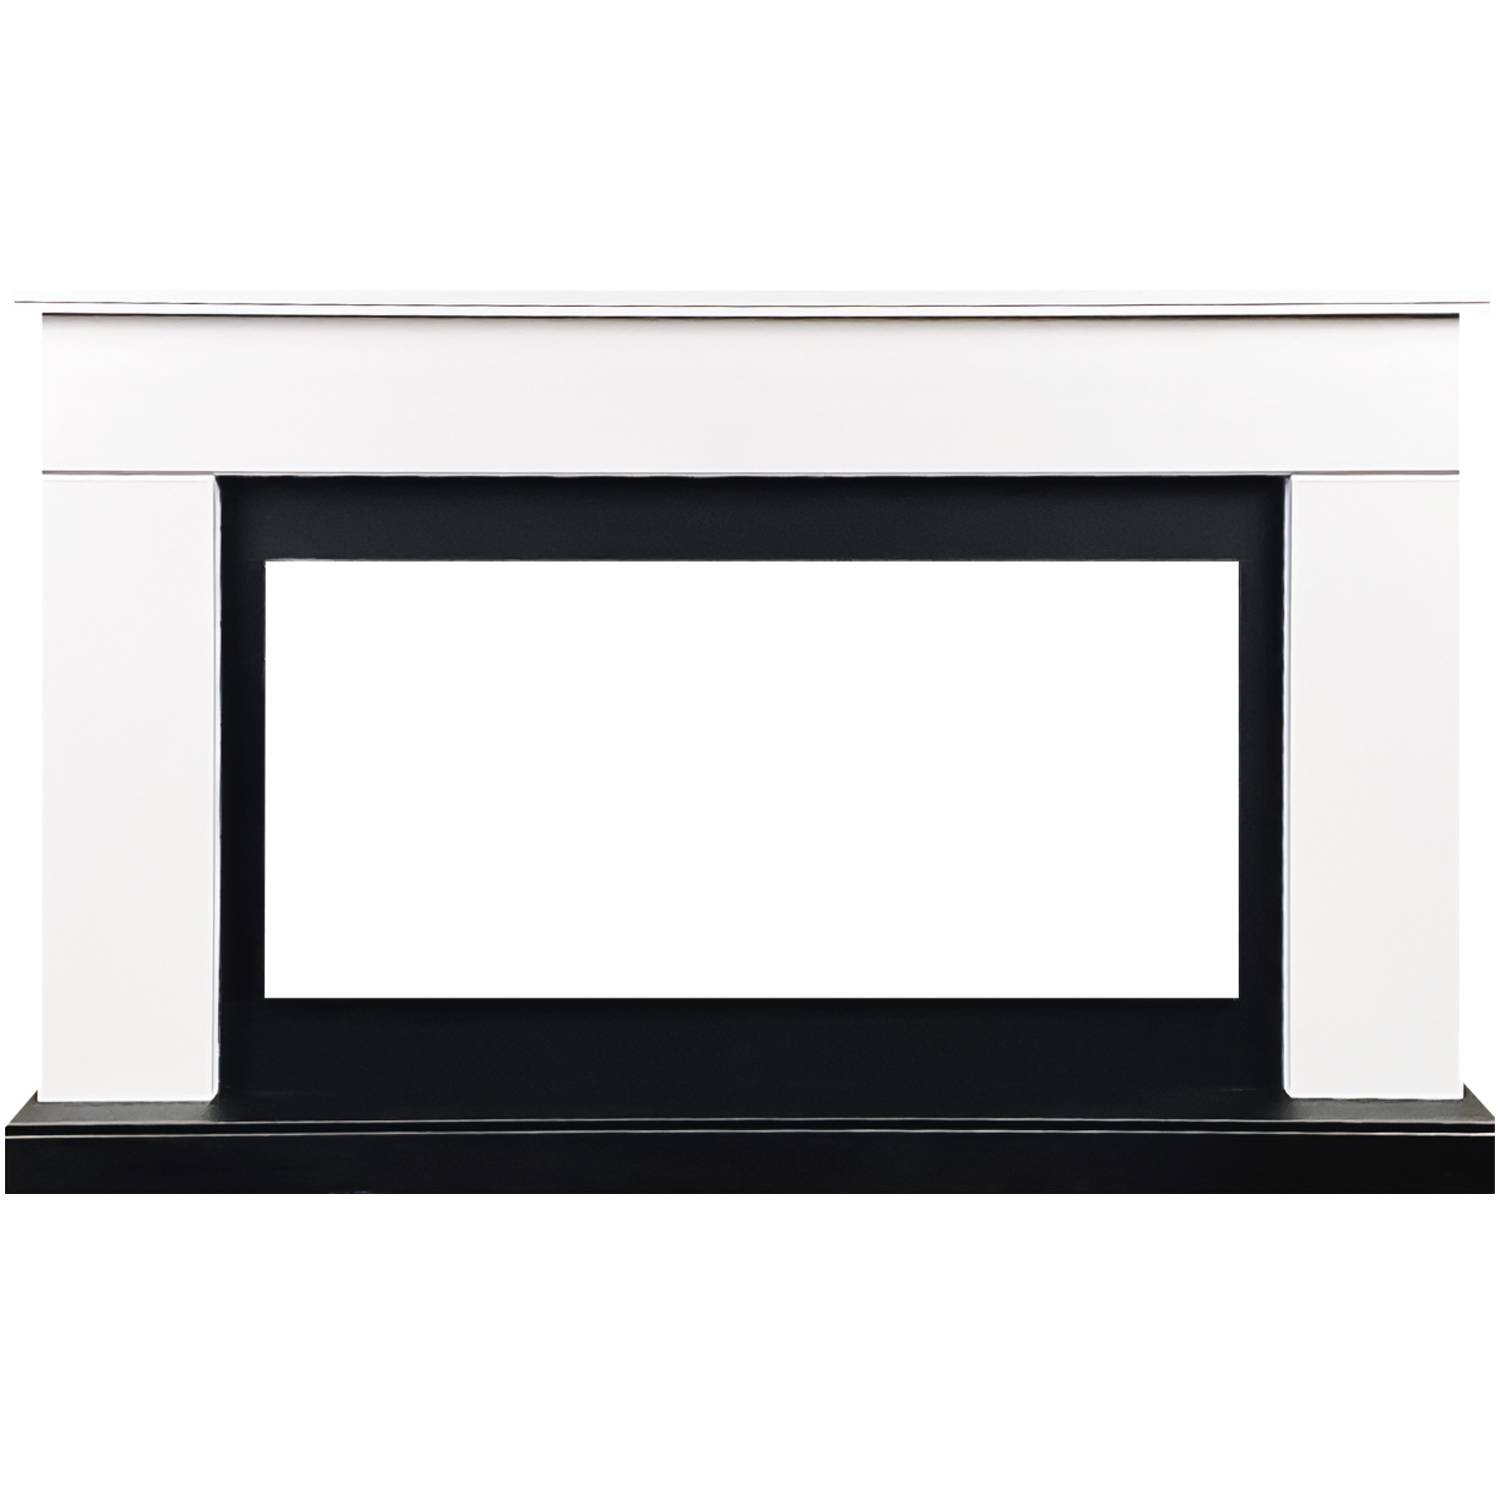 портал royal flame basel r белый с черным Портал Royal Flame Bergen (Разборный) - Белый с черным (Ширина 1370 мм)